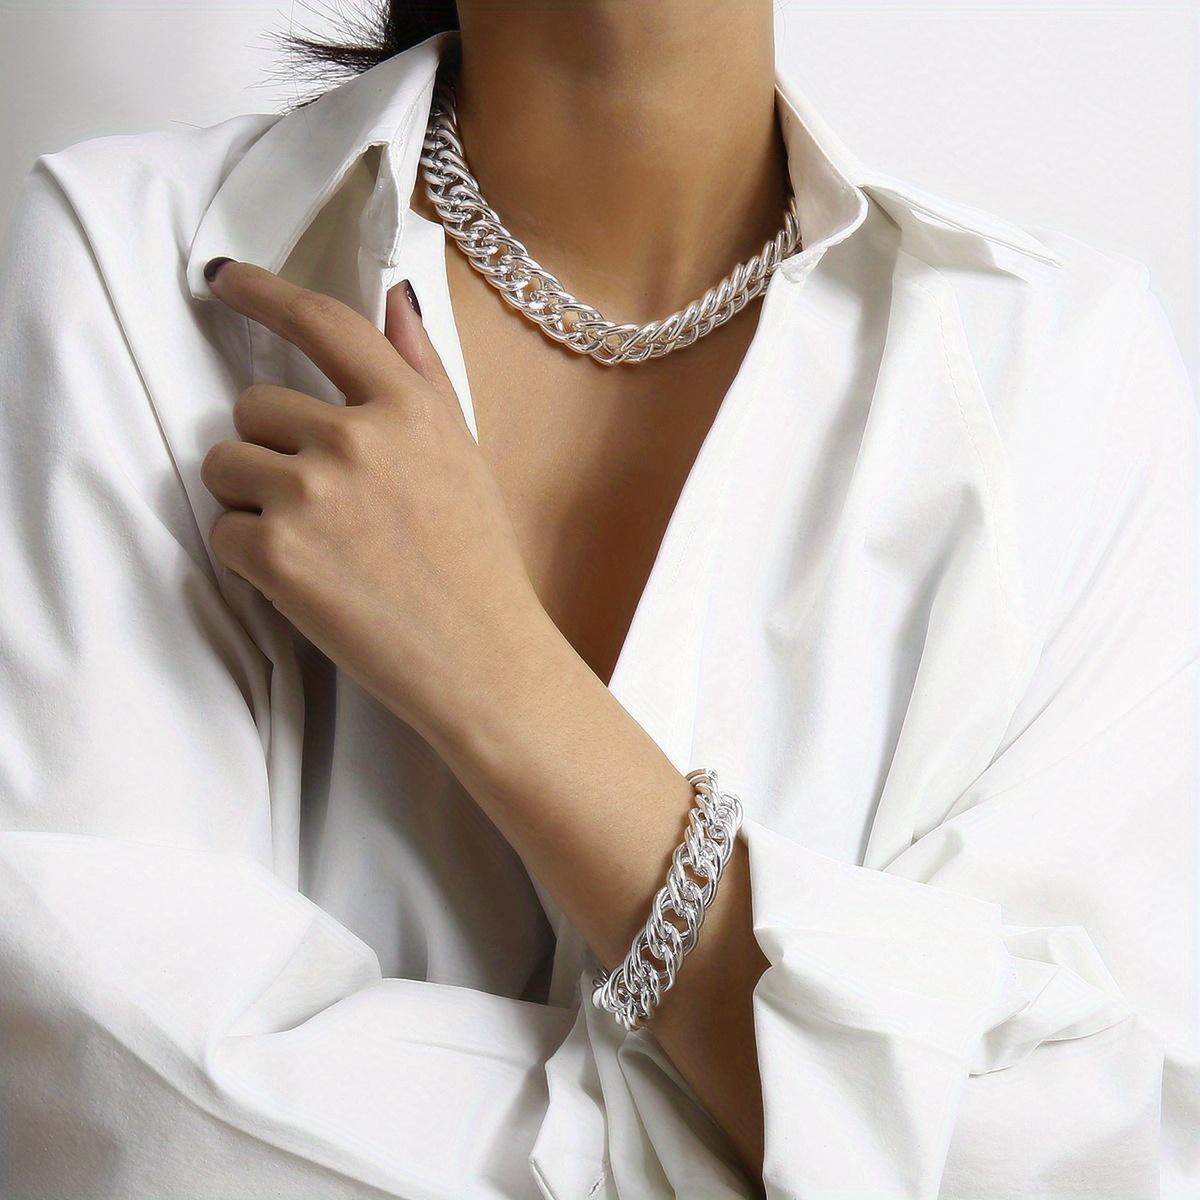 Girl's O-shape Chain, Metal Bracelet And Necklace Set, Elegant